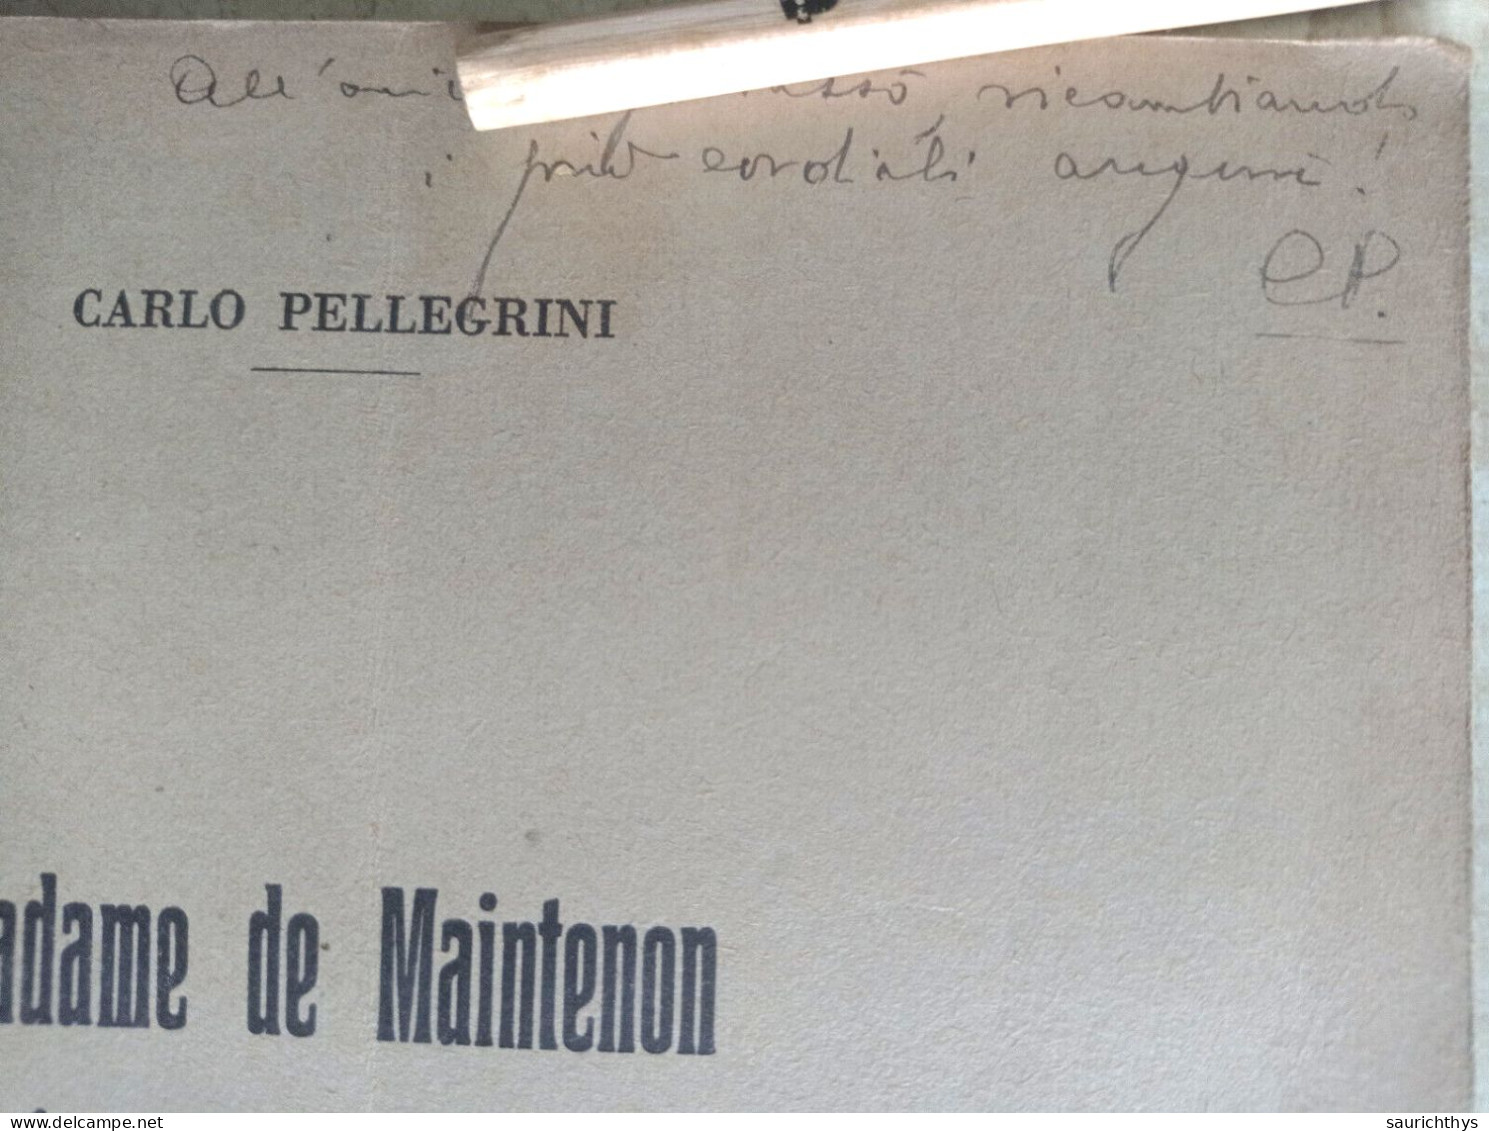 Madame De Maintenon Ed Uno Scrittore Italiano Del Seicento Autografo Carlo Pellegrini Da Viareggio - Geschiedenis, Biografie, Filosofie